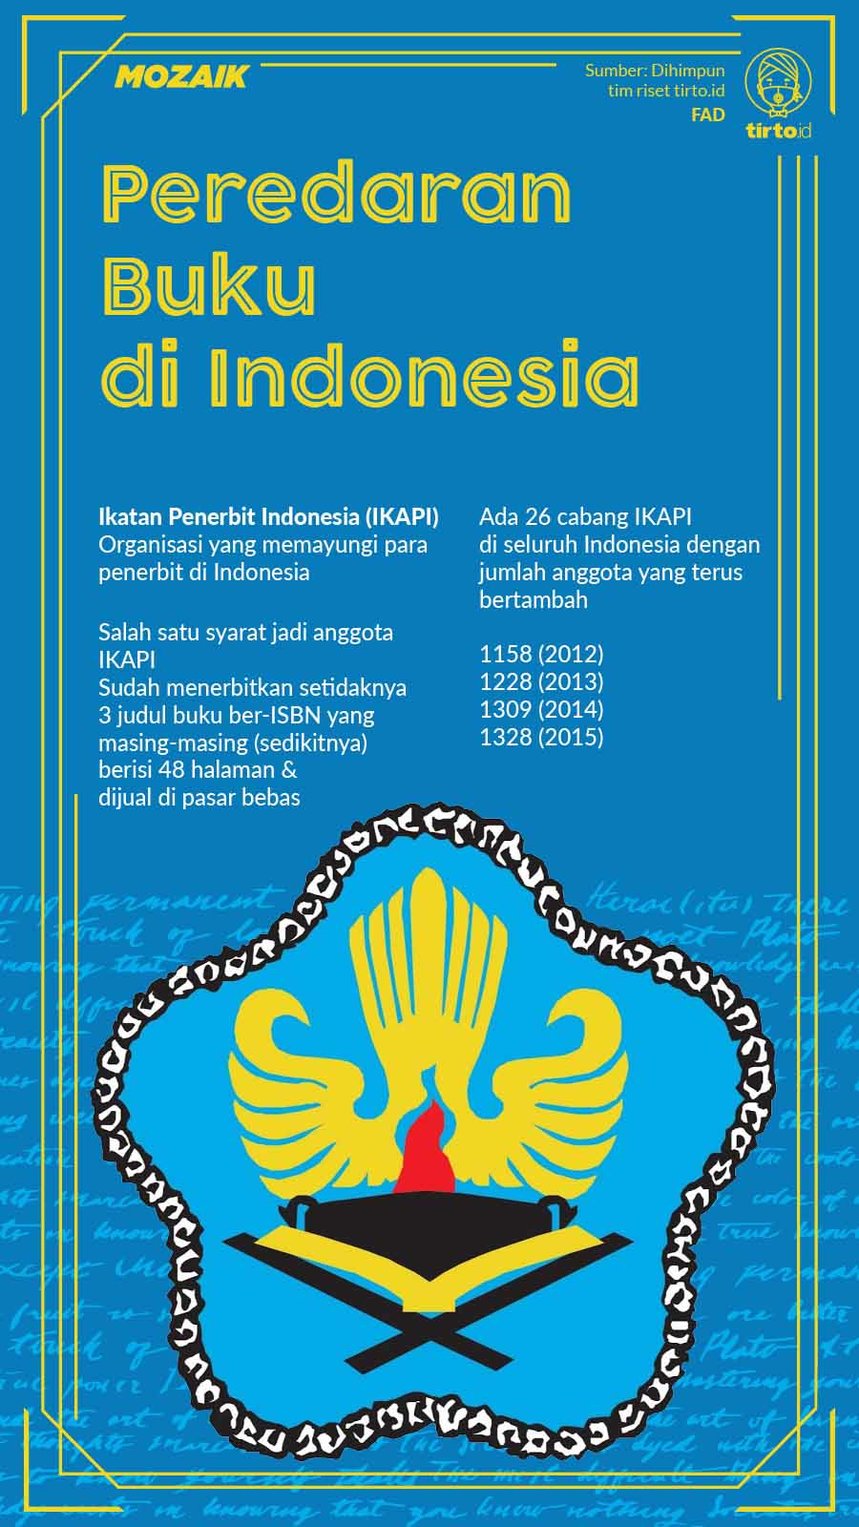 Infografik Mozaik Peredaran Buku di Indonesia